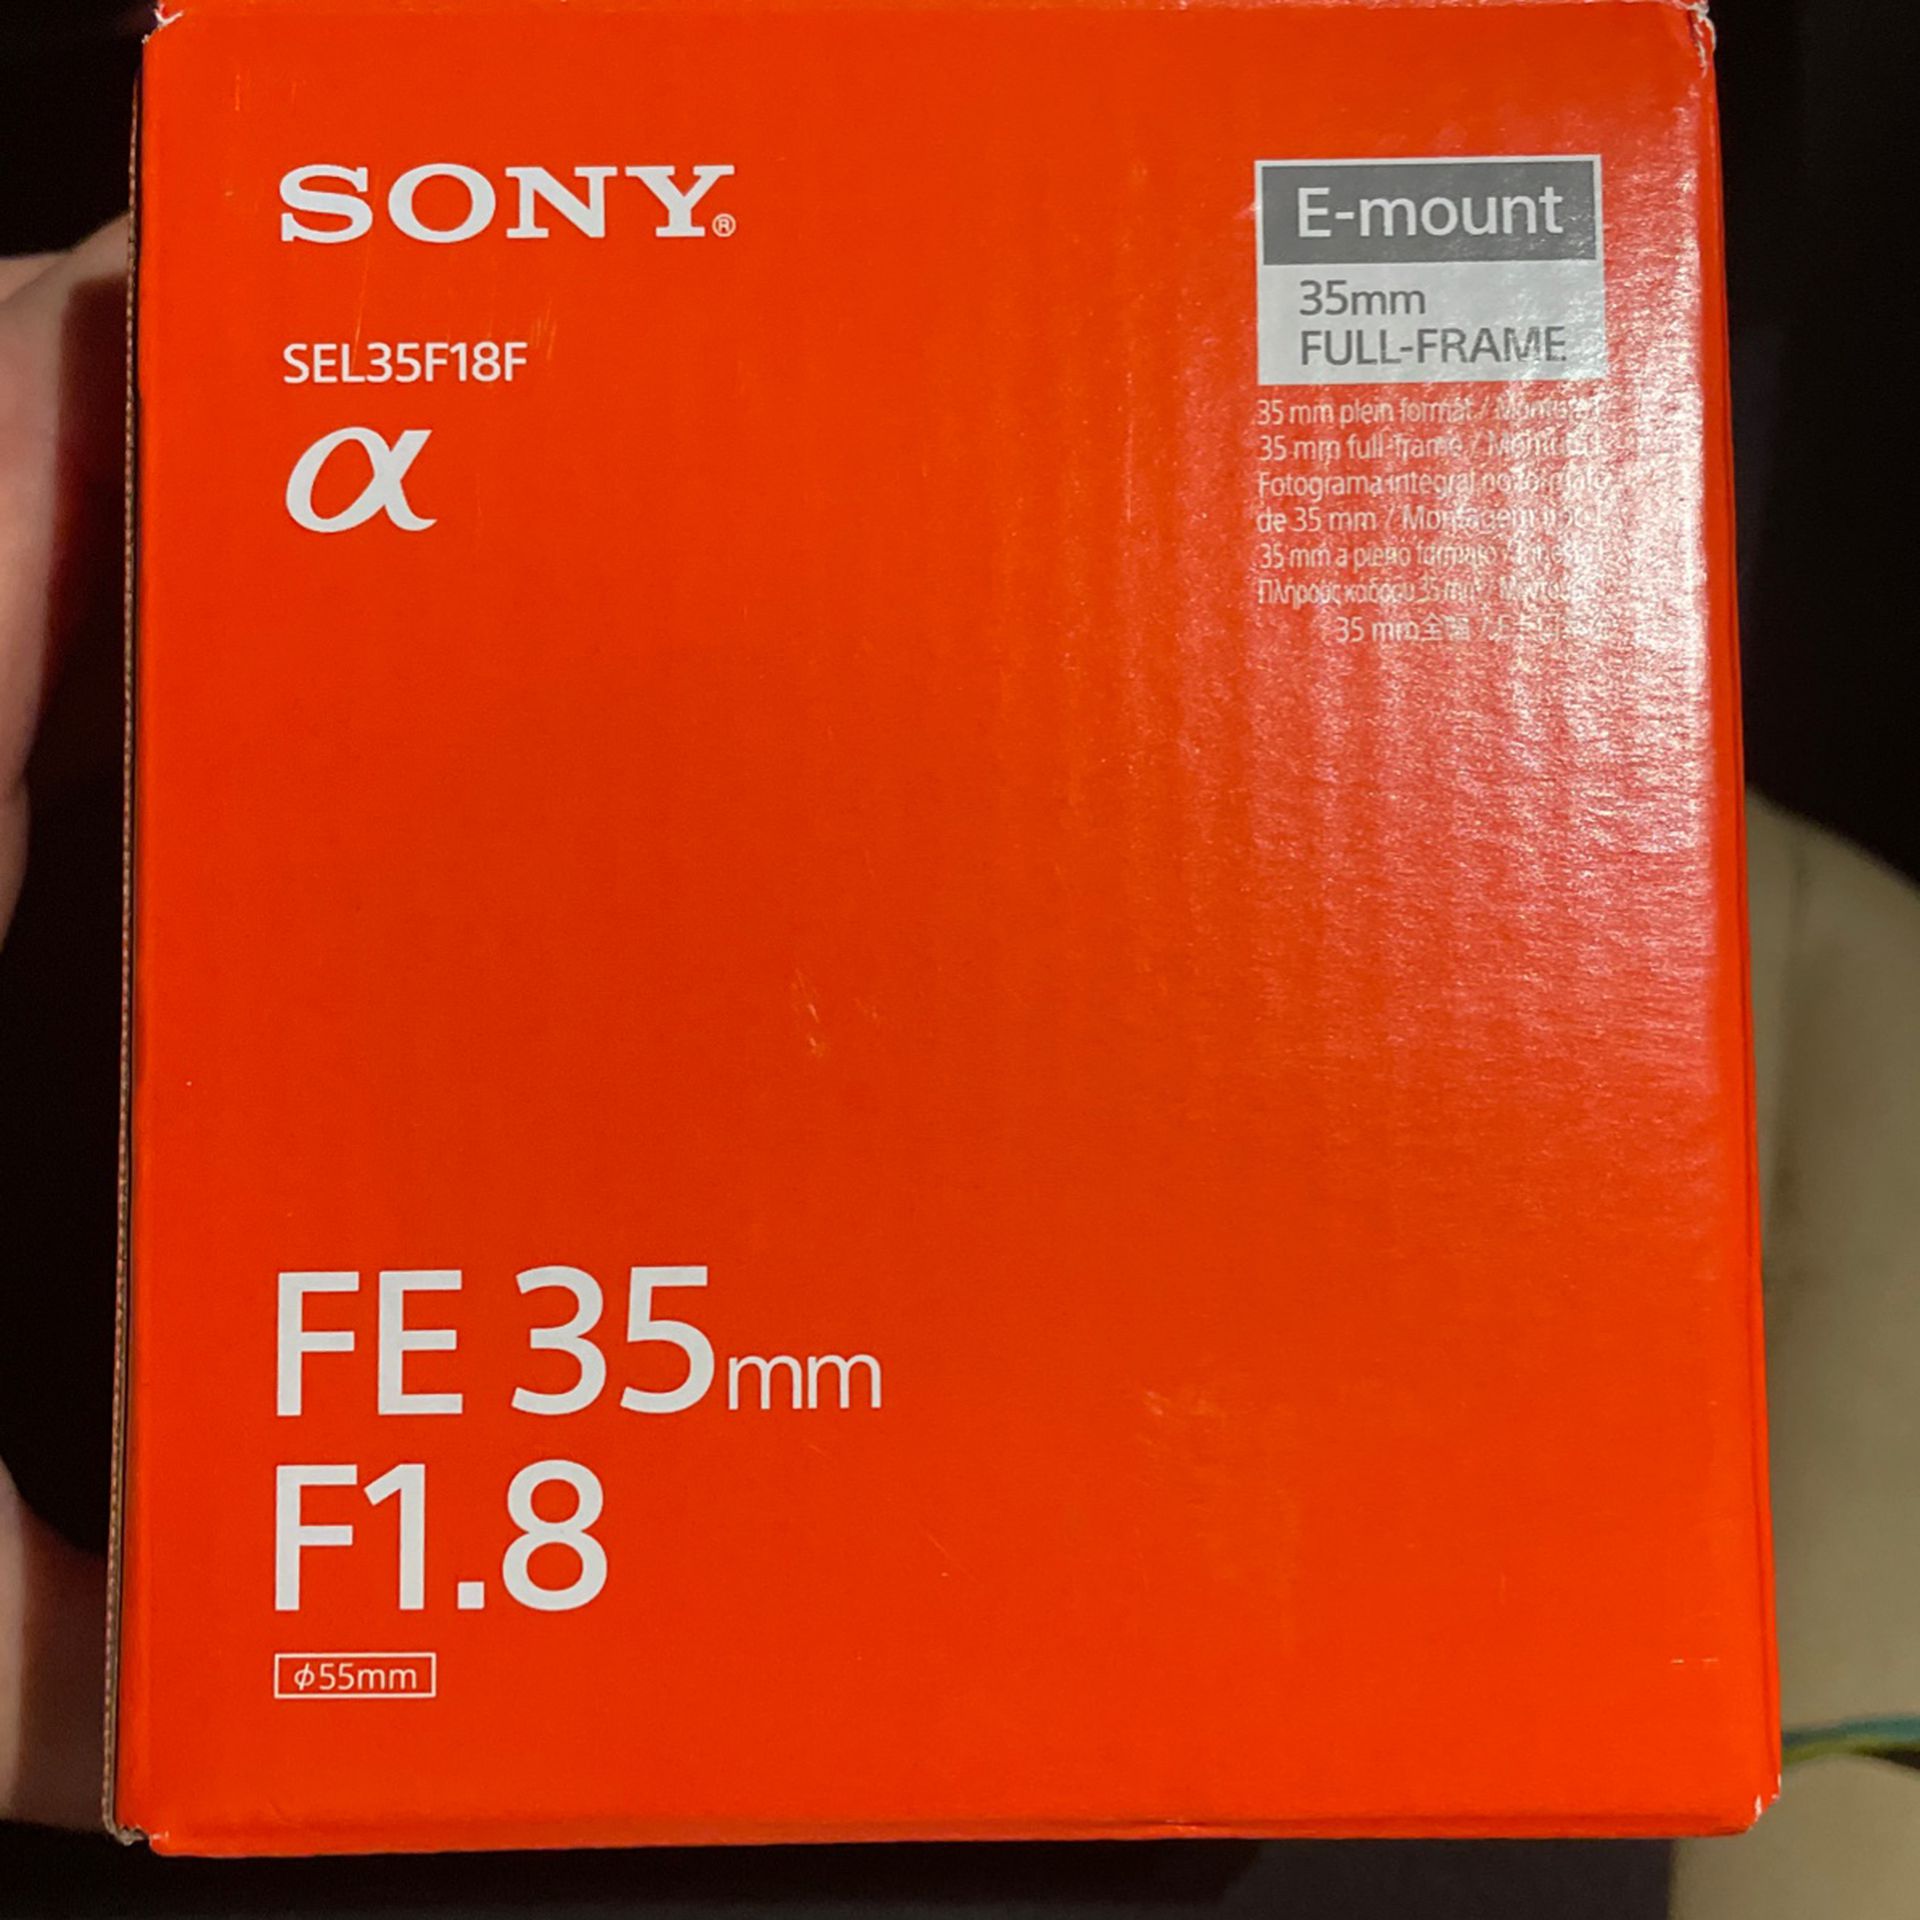 Sony SEL35F18F E-mount Interchangeable Lens